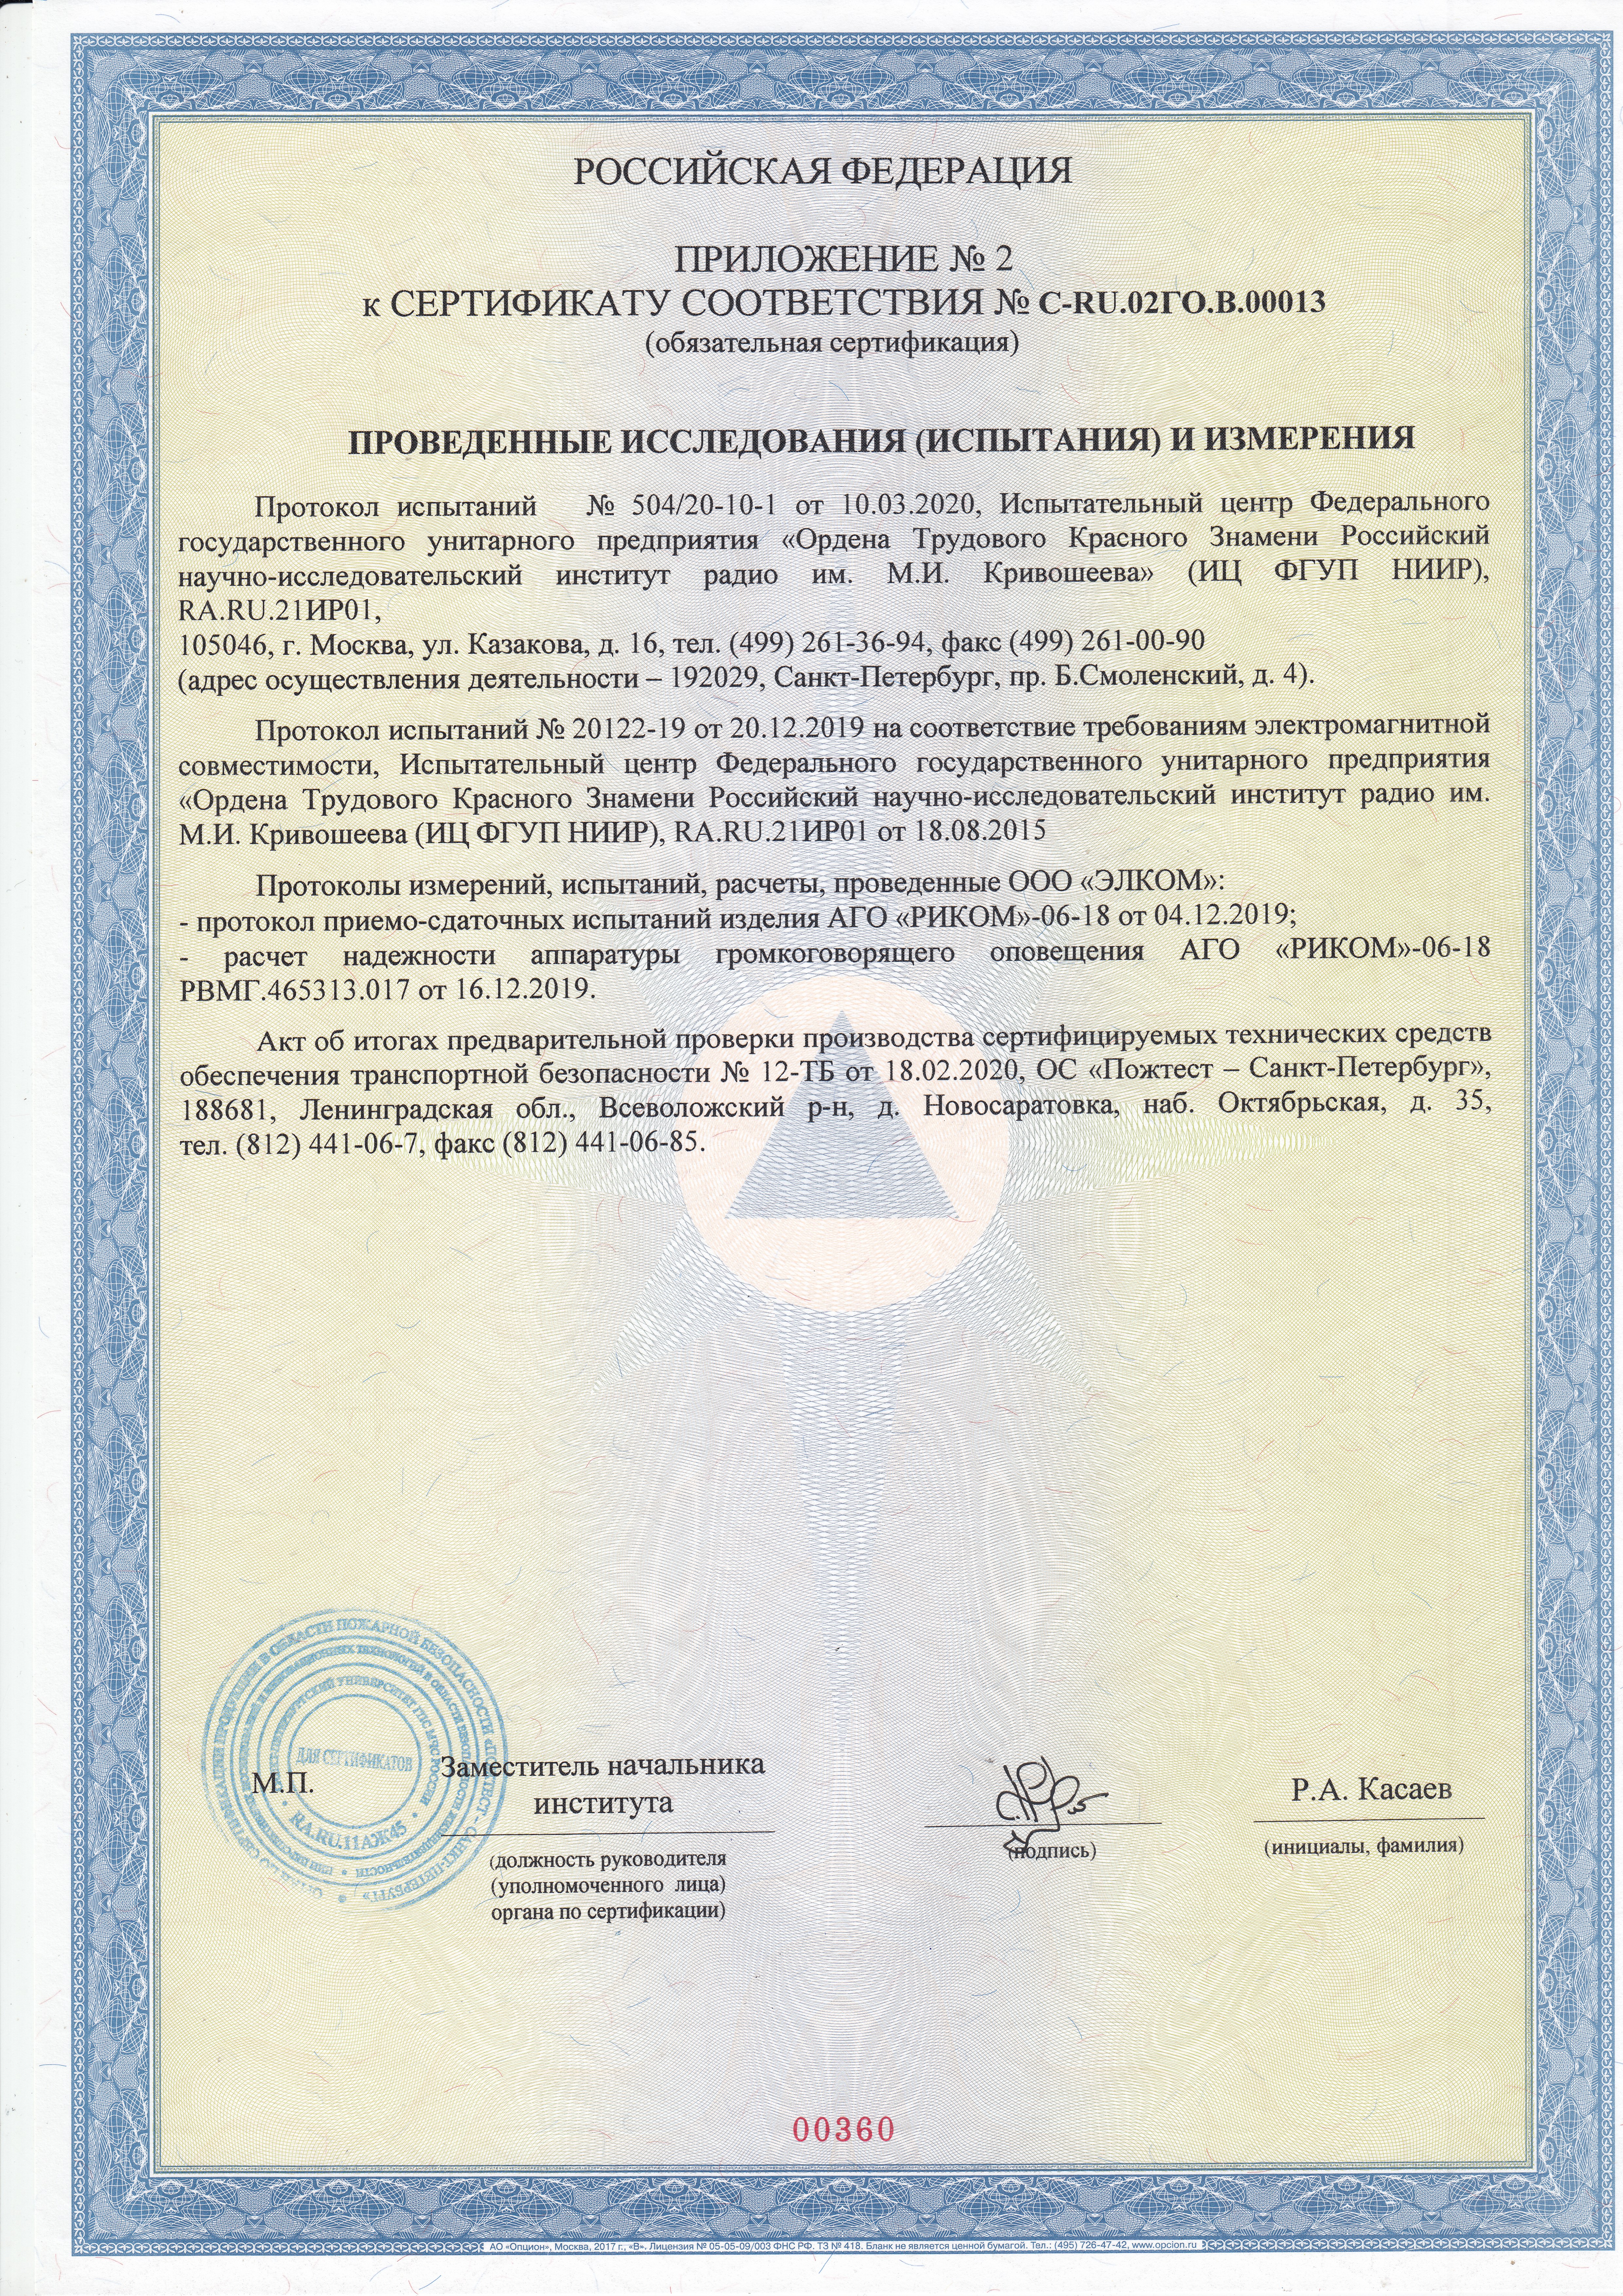 Приложение 2 сертификата  по  транспортной  безопасности  на  АГО-РИКОМ-06-18